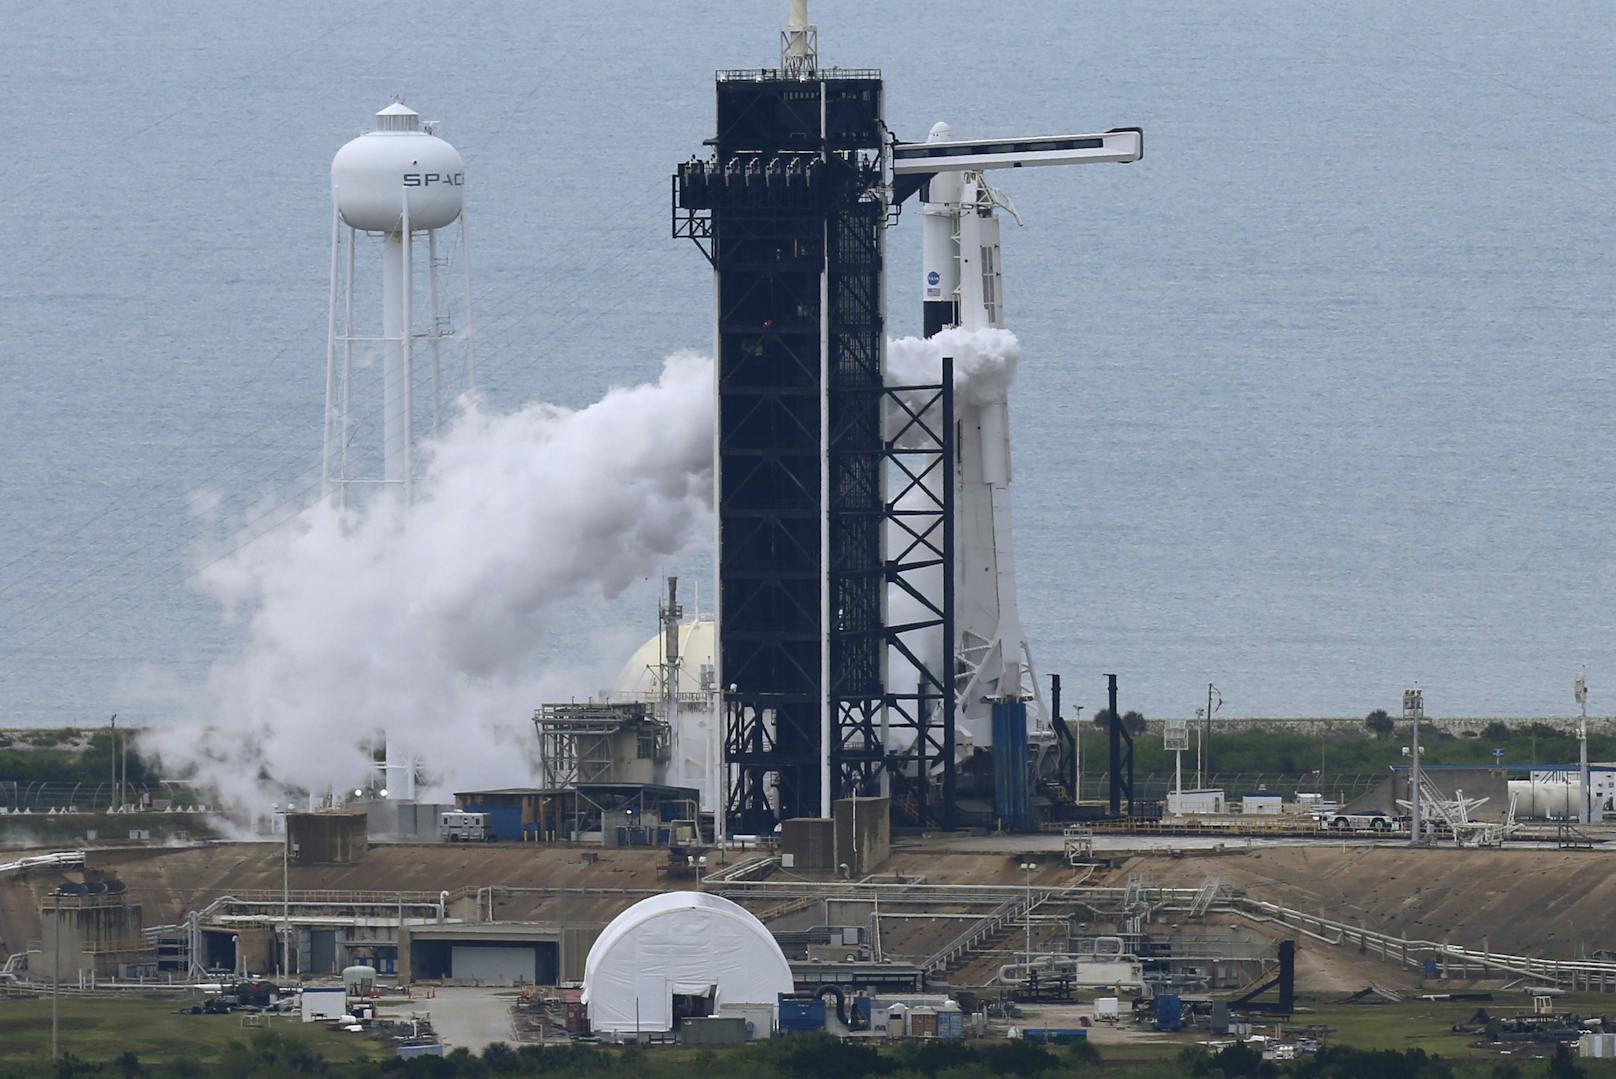 Rund eine Viertelstunde vor dem geplanten Start wurde der Test am Mittwoch vorerst abgesagt, wie die US-Raumfahrtbehörde Nasa mitteilte.